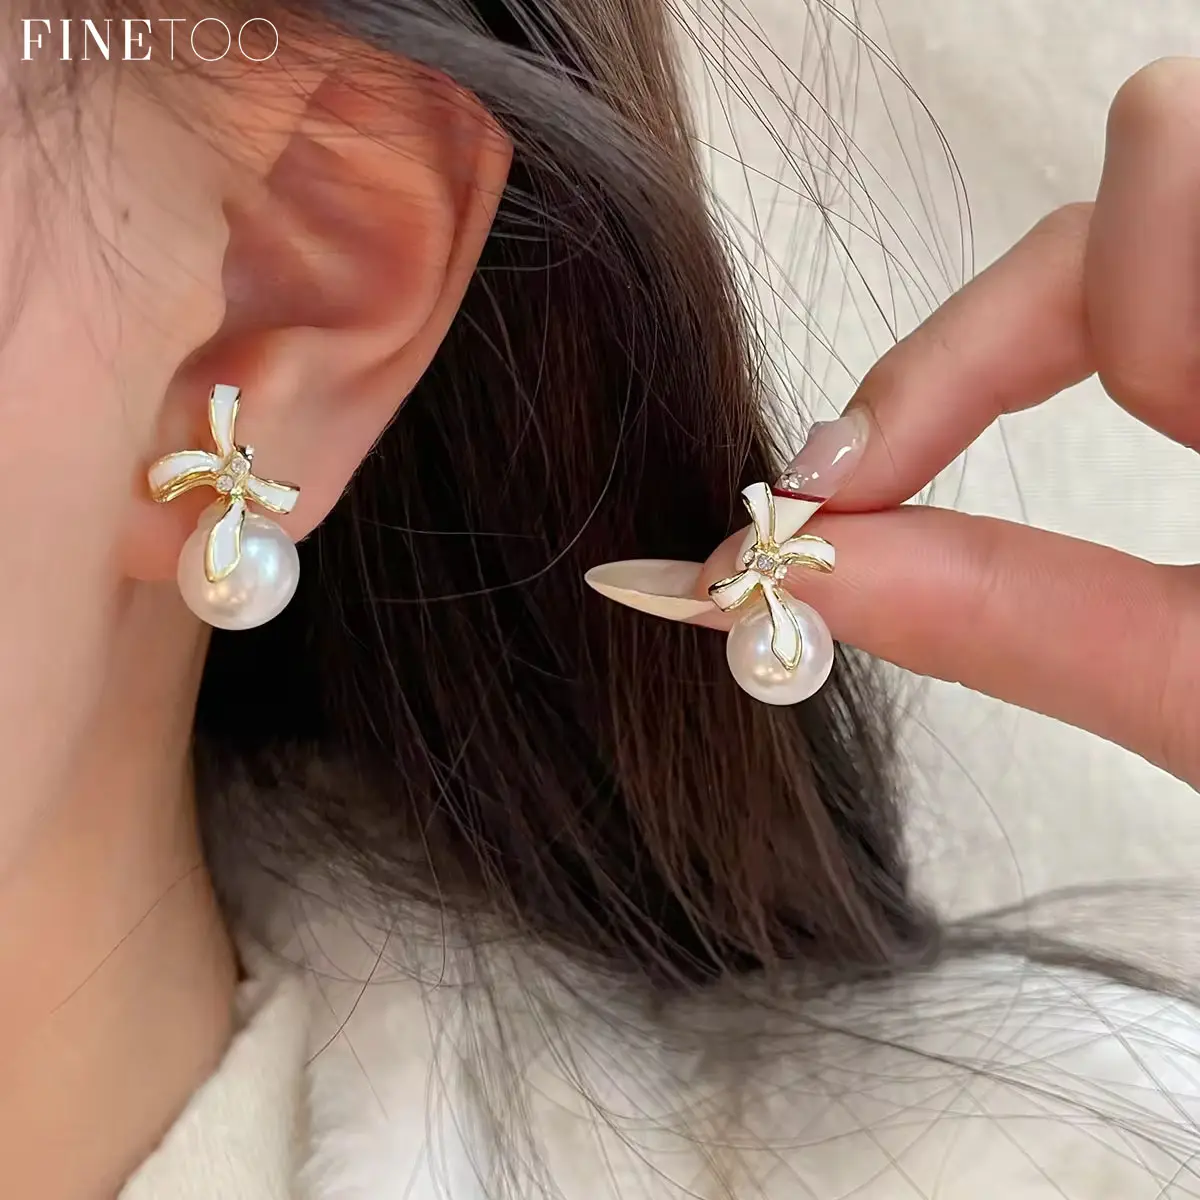 Finetoo Boucles d'oreilles coréennes en or avec perle et cristal, nœud papillon, nouvelles boucles d'oreilles à crochet pour femmes pour cadeau de fête